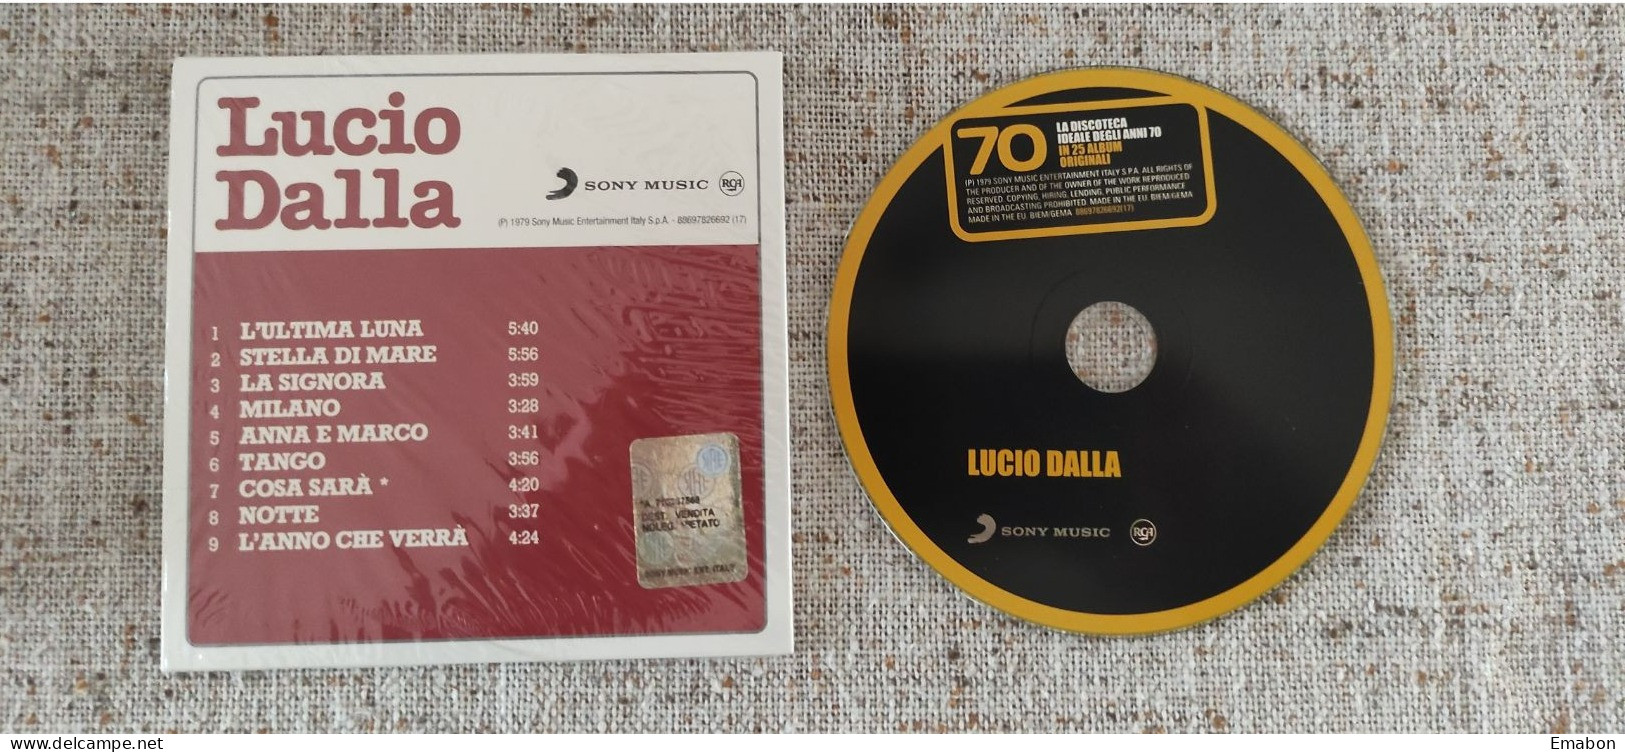 BORGATTA - ITALIANA  - Cd LUCIO DALLA  - LUCIO DALLA - SONY MUSIC 1979 -  USATO In Buono Stato - Autres - Musique Italienne